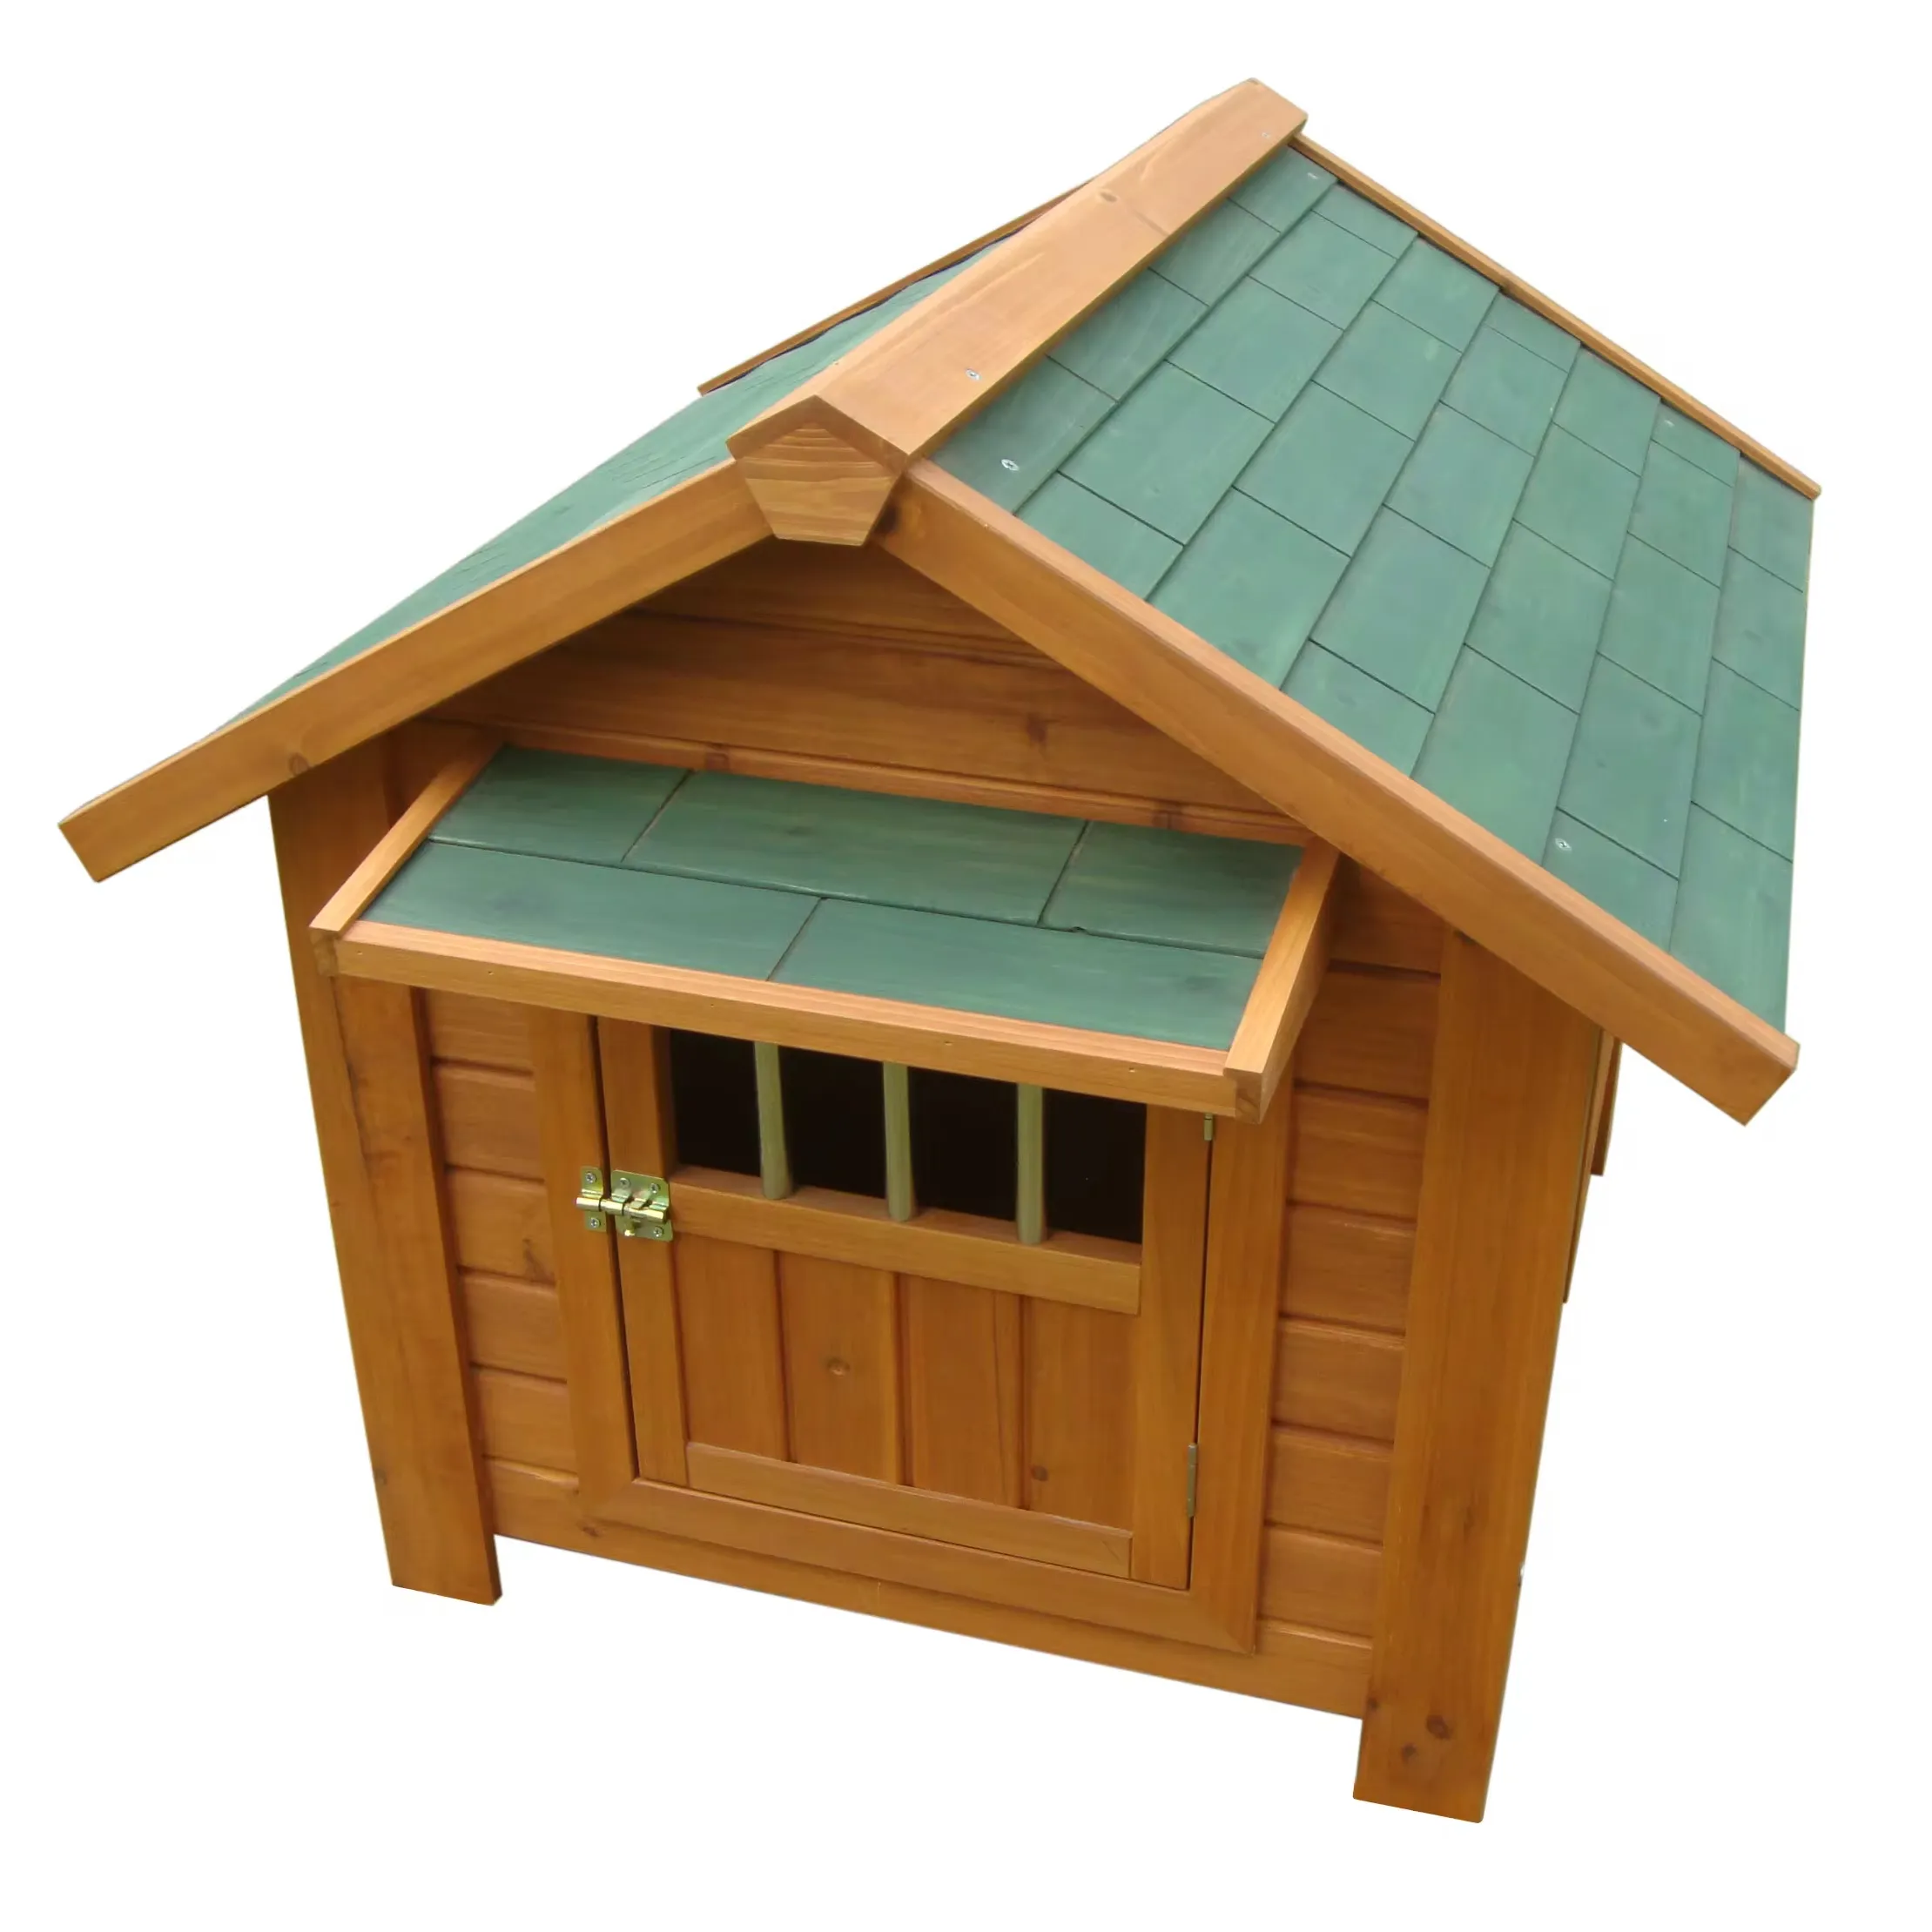 Nhà thú cưng bằng gỗ phổ biến của Cũi chó với một mái nhà độc đáo và một khóa an toàn